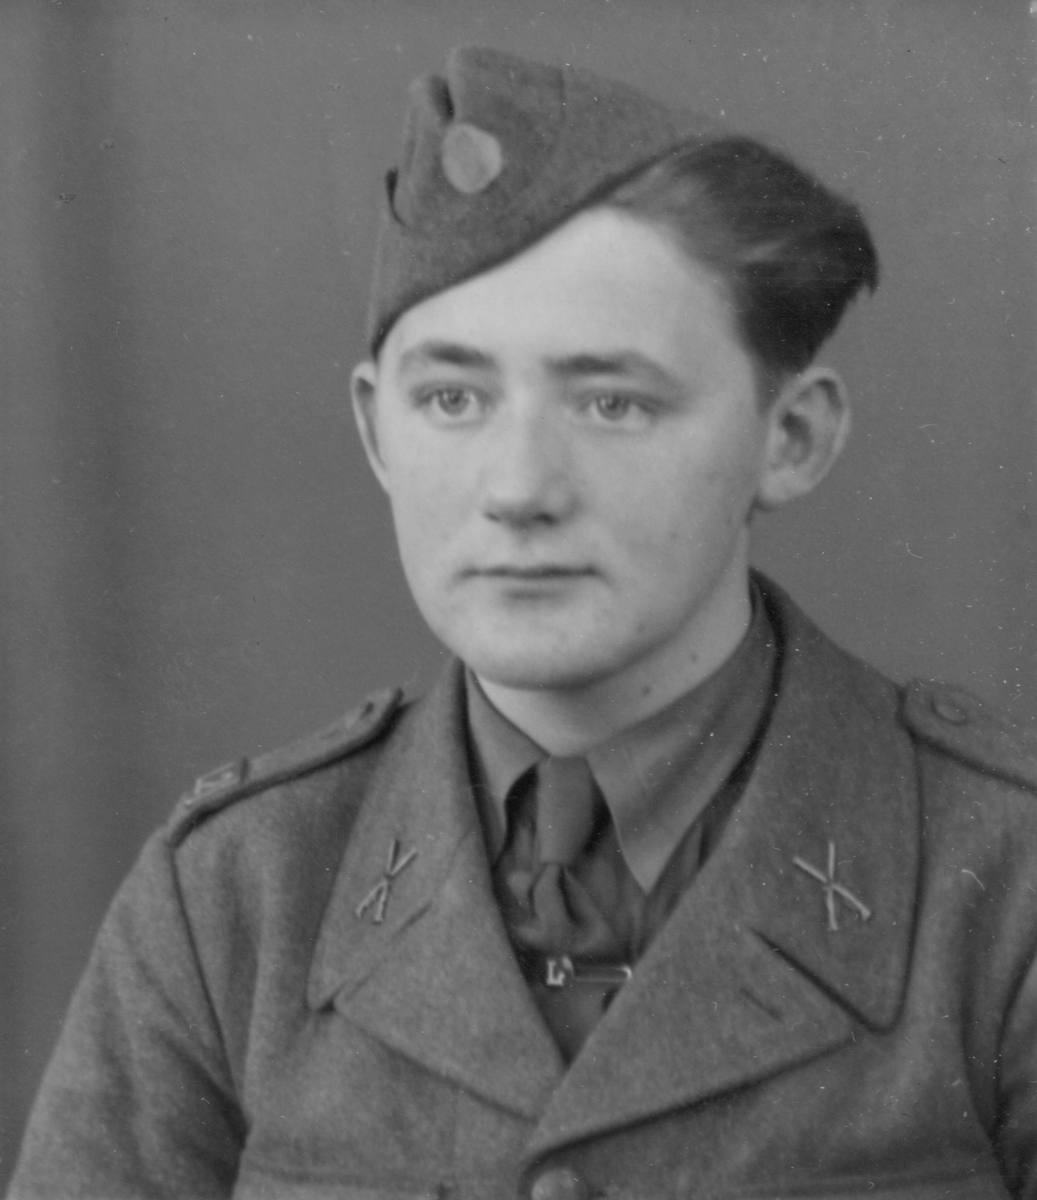 Porträtt av Gunnar Lundin, frivillig luftbevakare vid 2:a landstormsregemente L 2 under beredskapstiden, klädd i uniform med mössa.